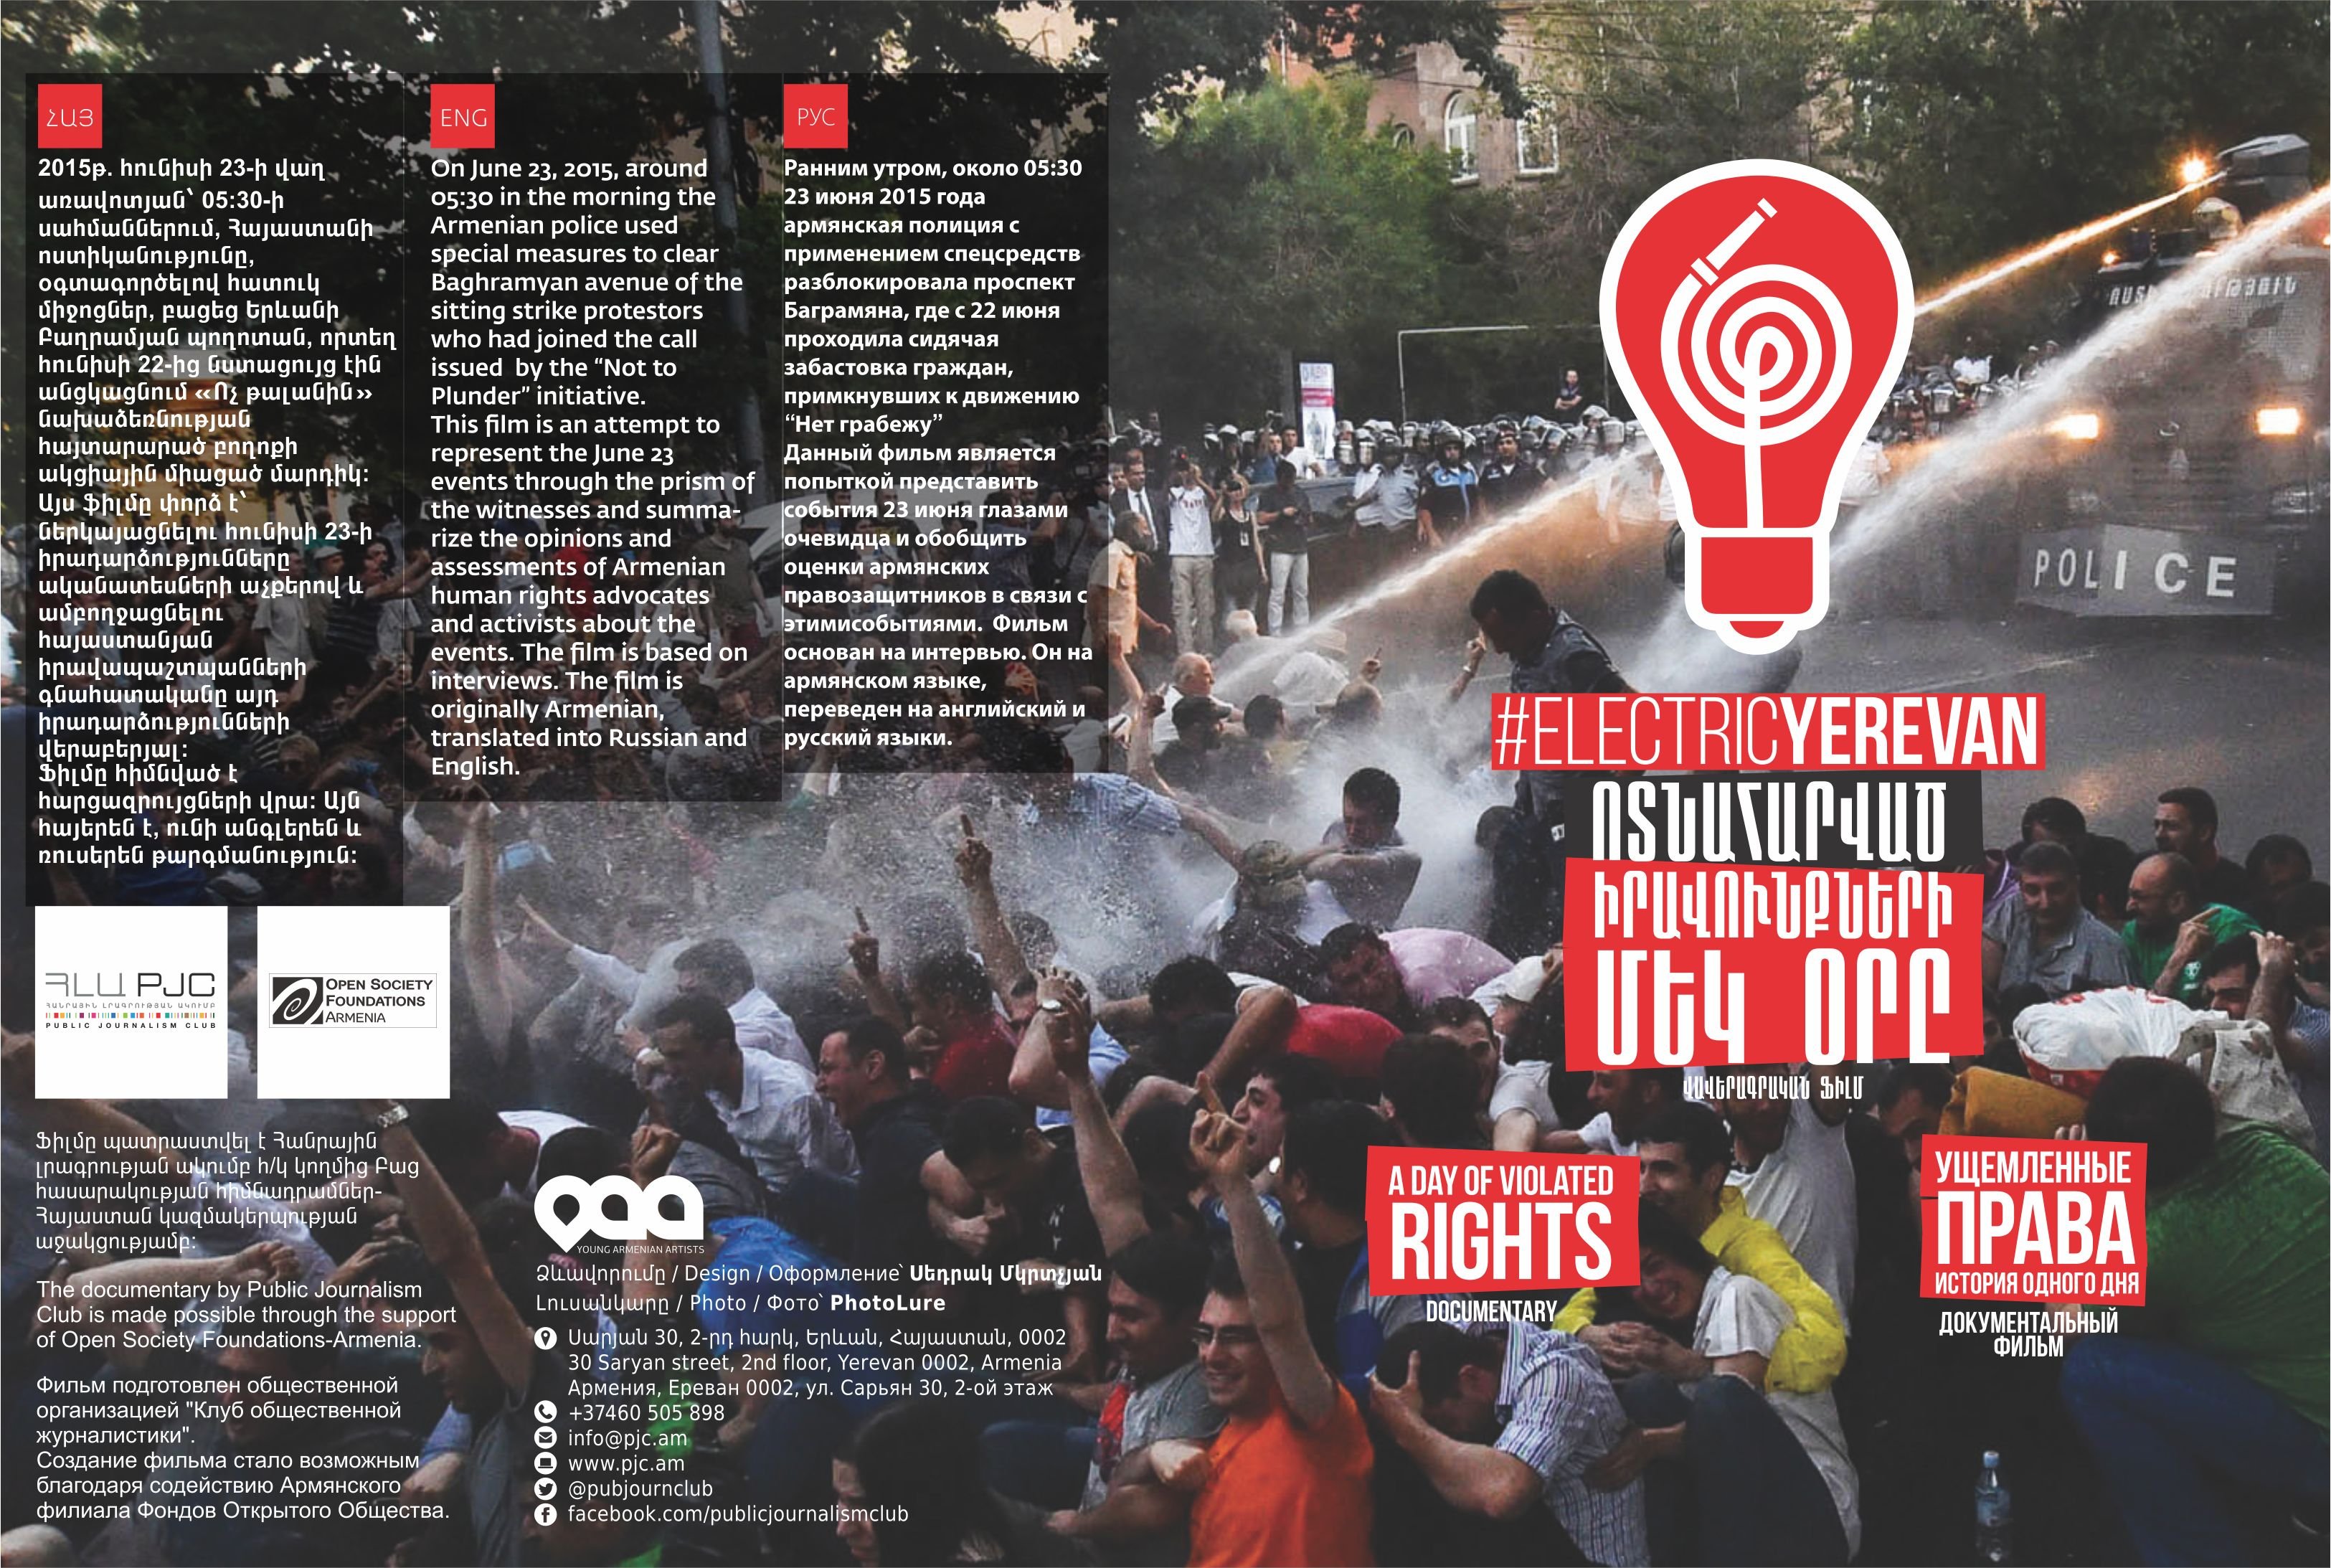 «#electricyerevan. ոտնահարված իրավունքների մեկ օրը» վավերագրական ֆիլմը նոմինացվել է “ՄԷԿ ԿԱԴՐ” միջազգային փառատոնում